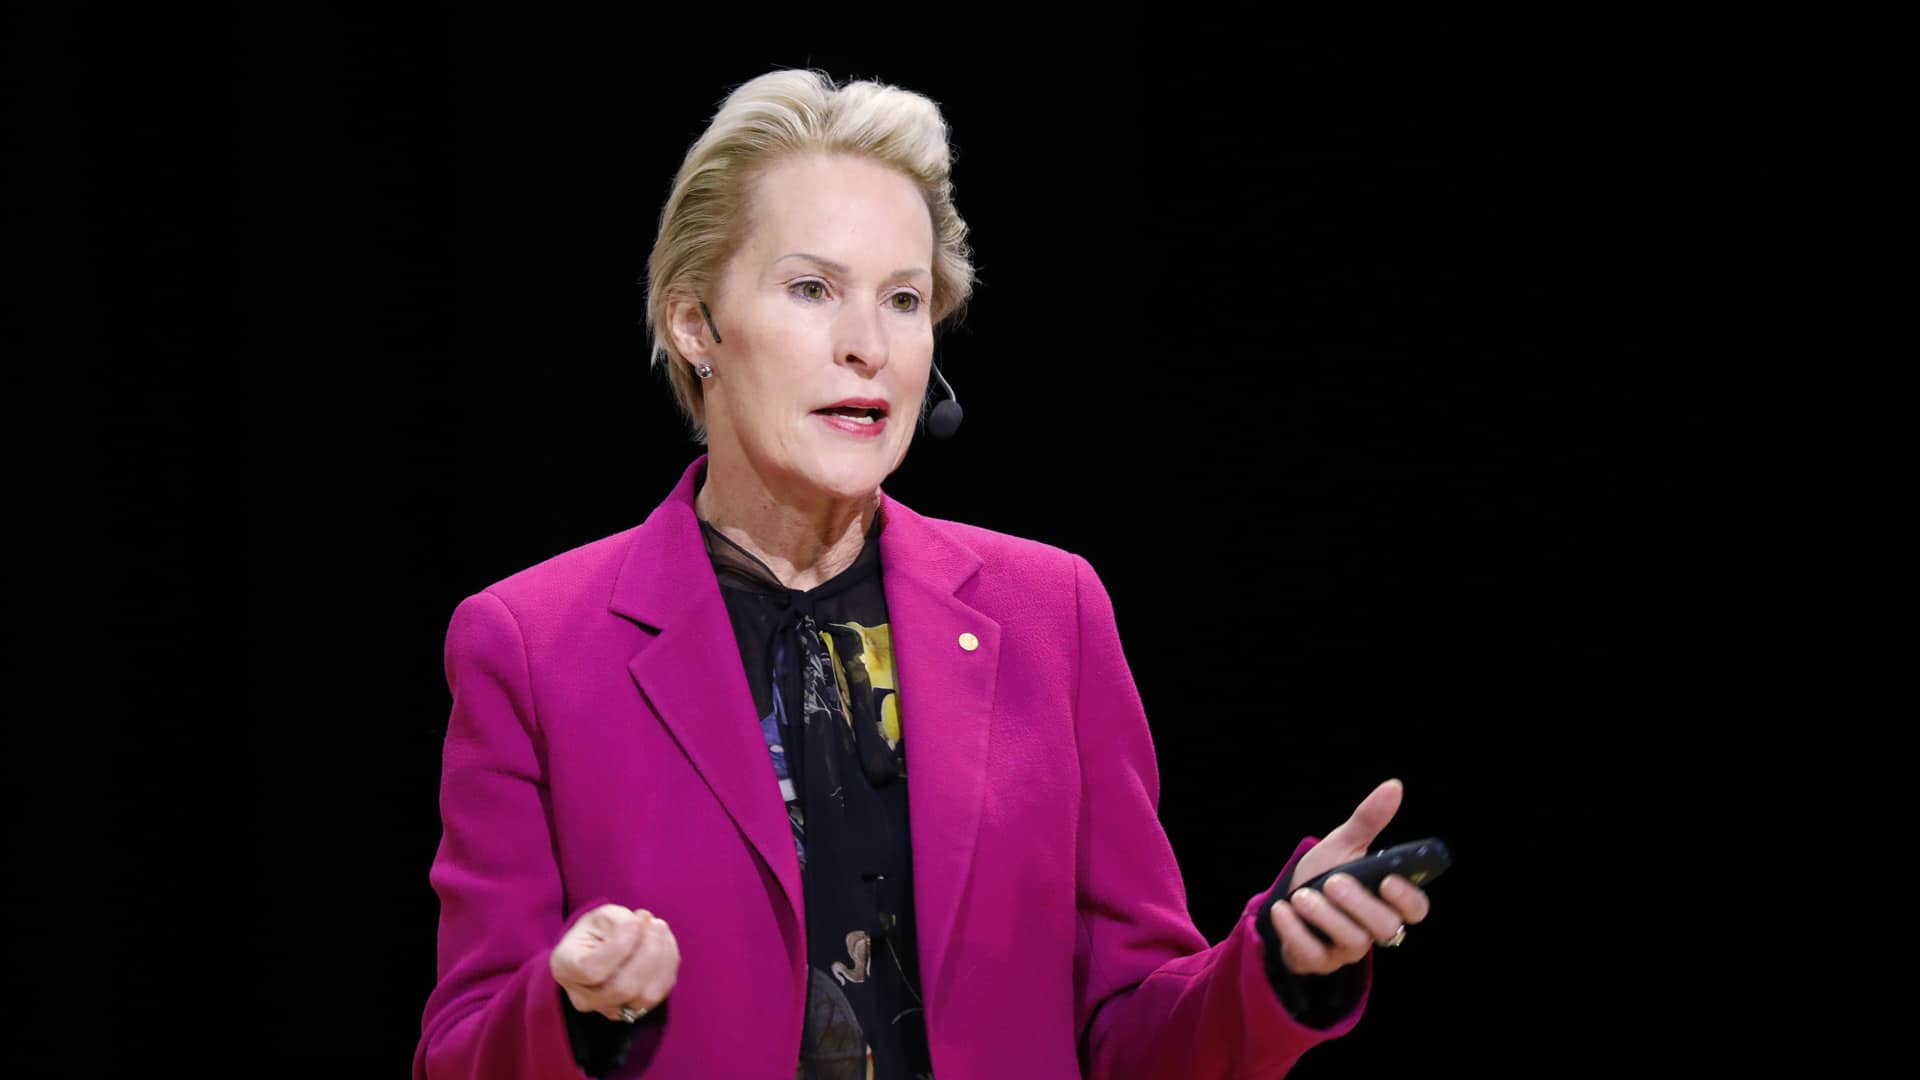 Frances Arnold giving her December 2018 Nobel Lecture in Stockholm, Sweden.